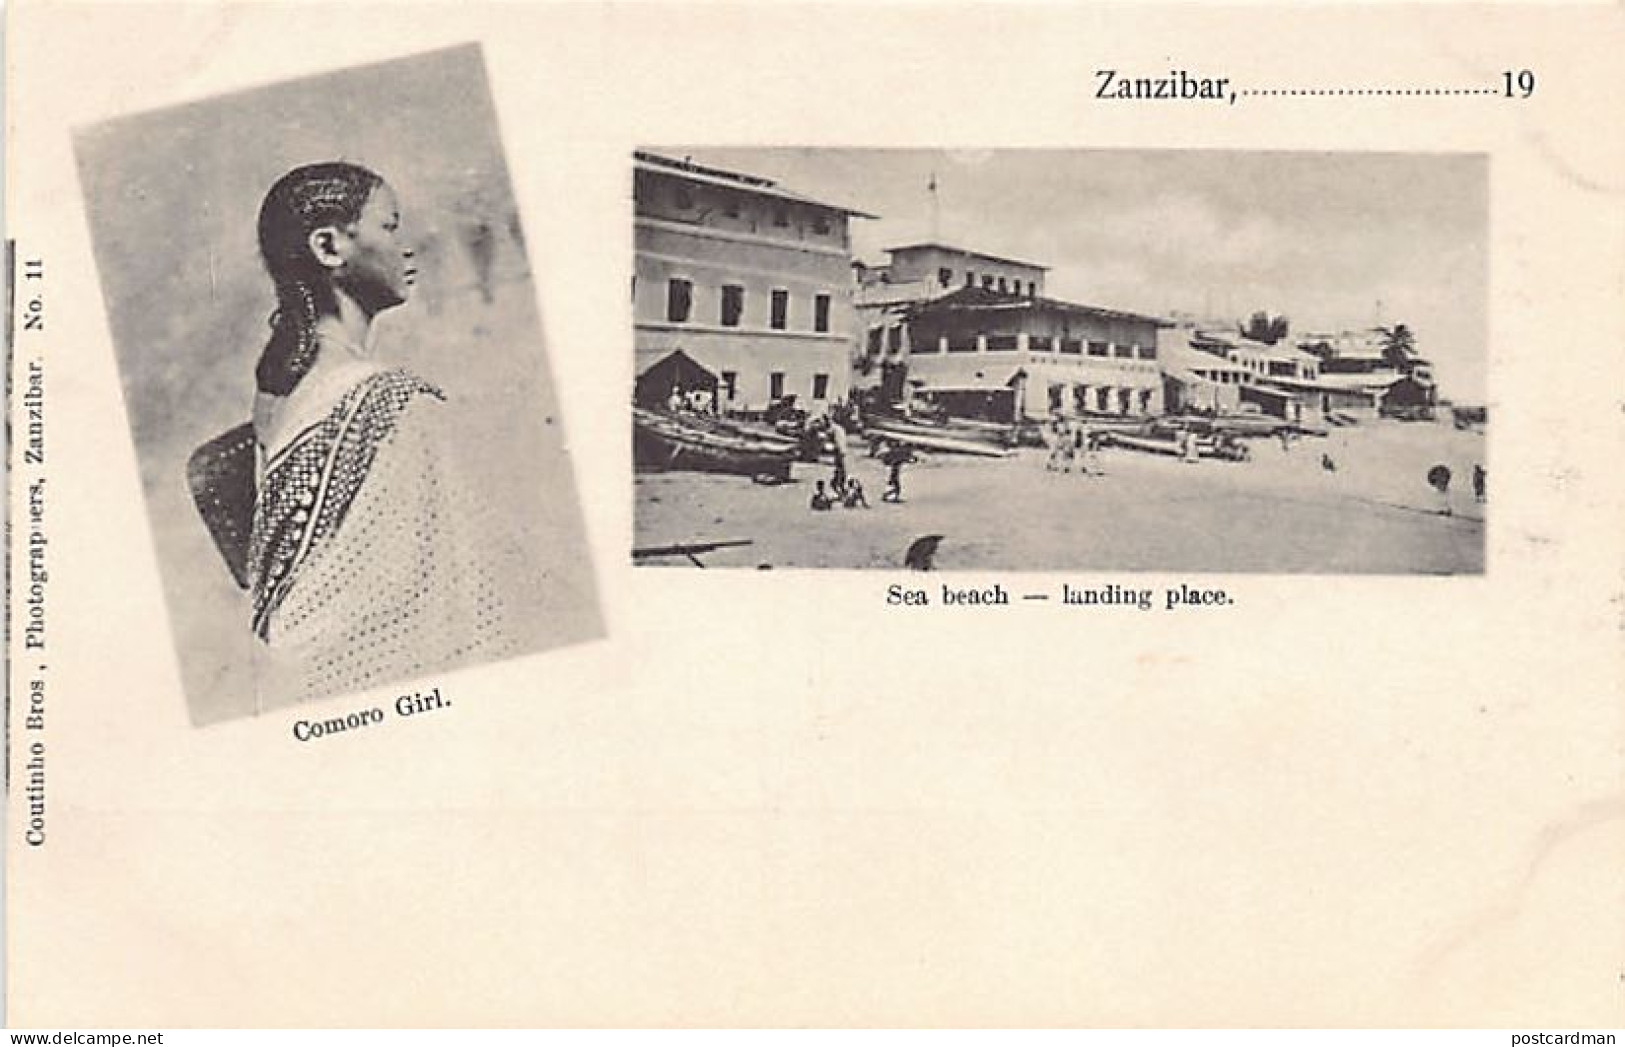 Zanzibar - Comoro Girl - Sea Beach - Landing Place - Publ. Coutinho Bros. 11 - Tanzania